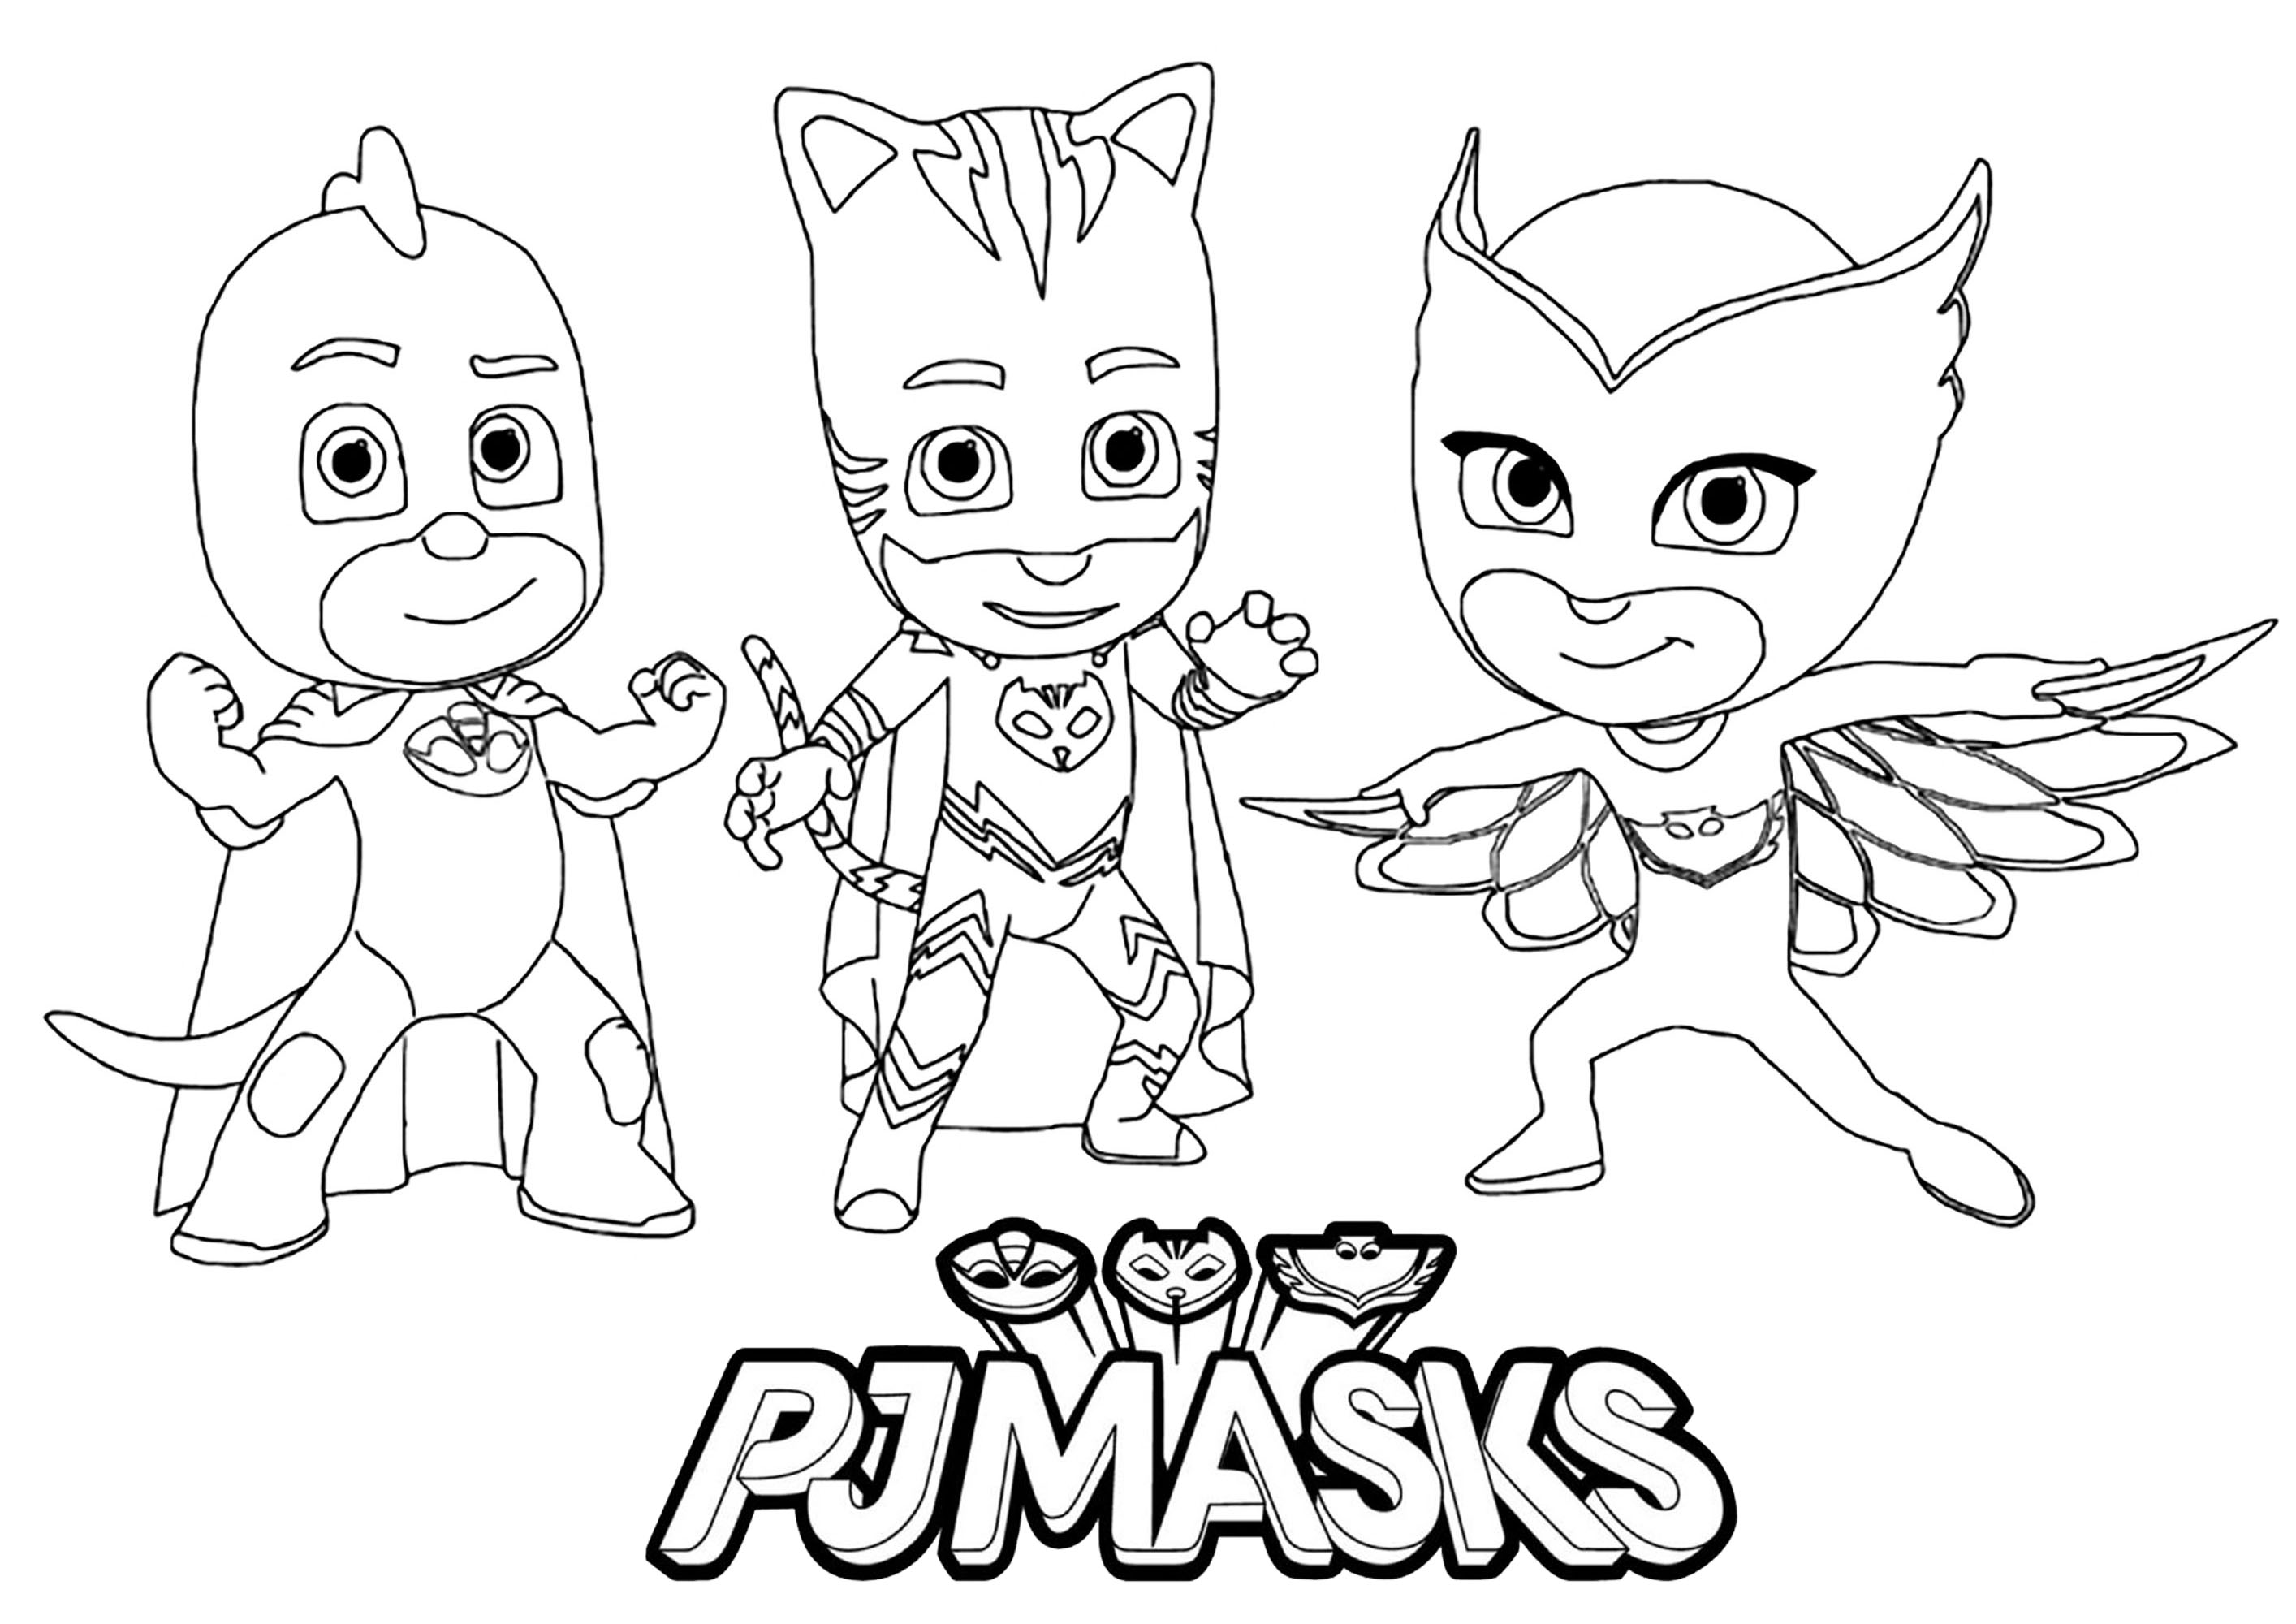 Pj masks to download for free - PJ Masks Kids Coloring Pages